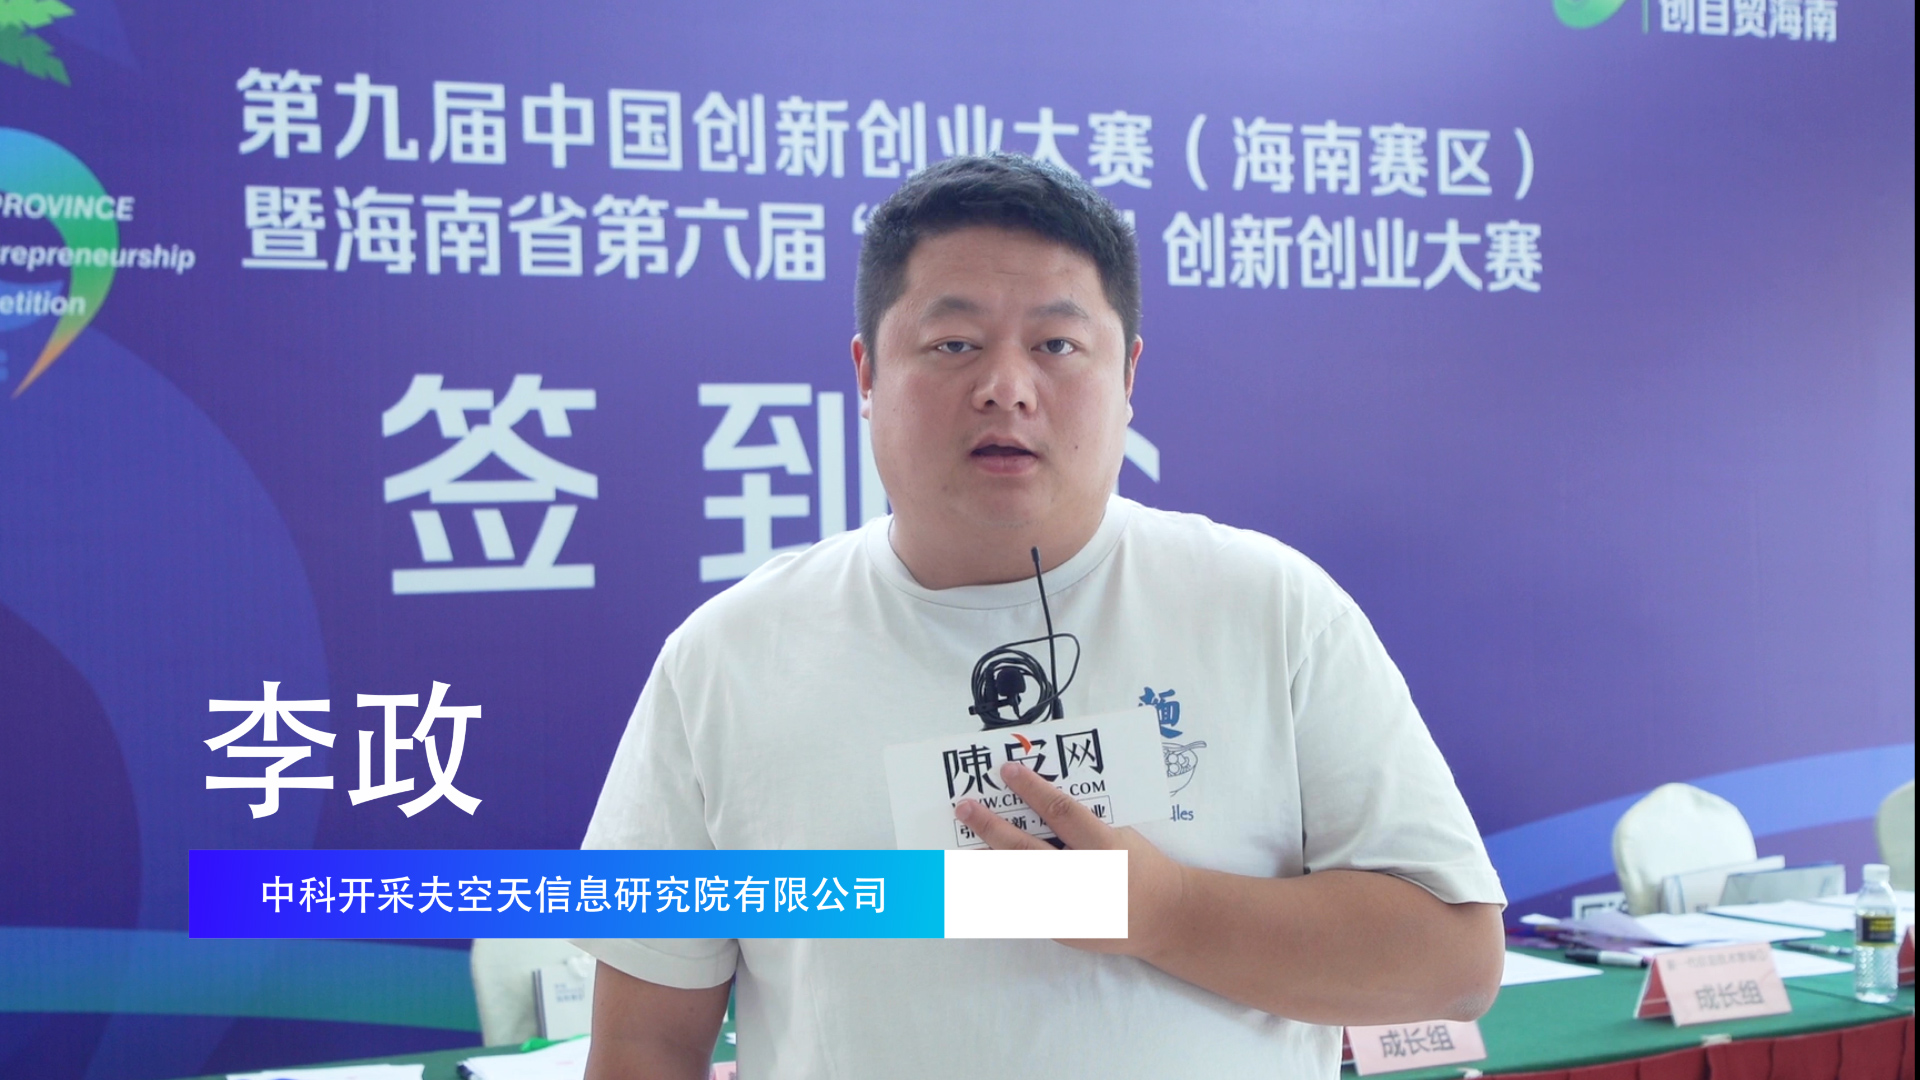 选手专访|李政 “星上计算”打破传统遥感卫星服务模式